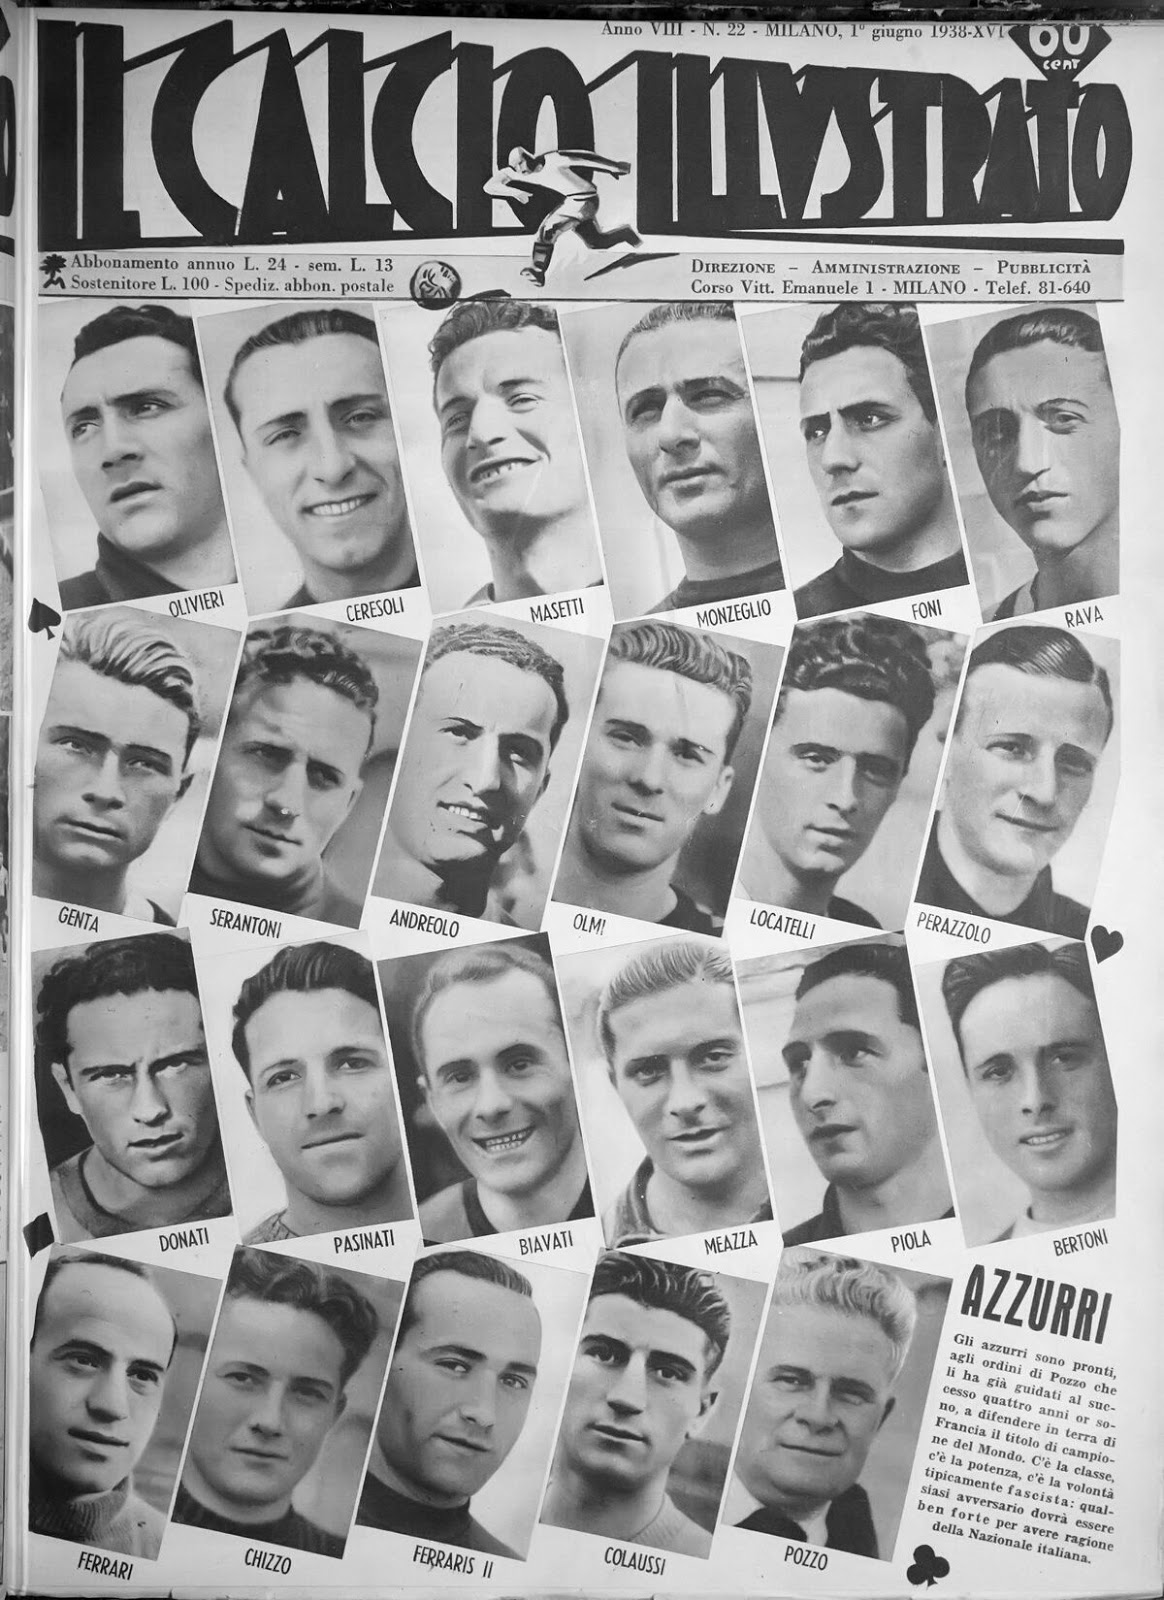 Calcio Illustrato, issue 22, June 1, 1938 (1)